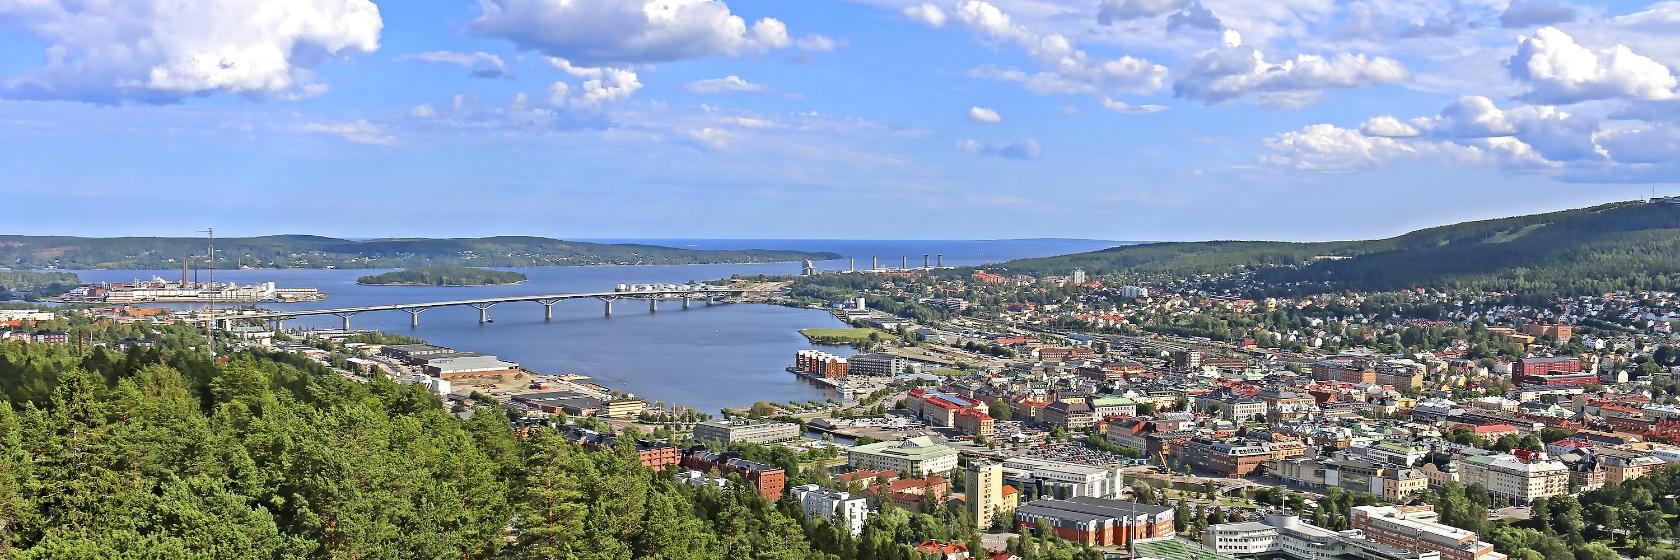 10 Best Sundsvall Hotels, Sweden (From $59)